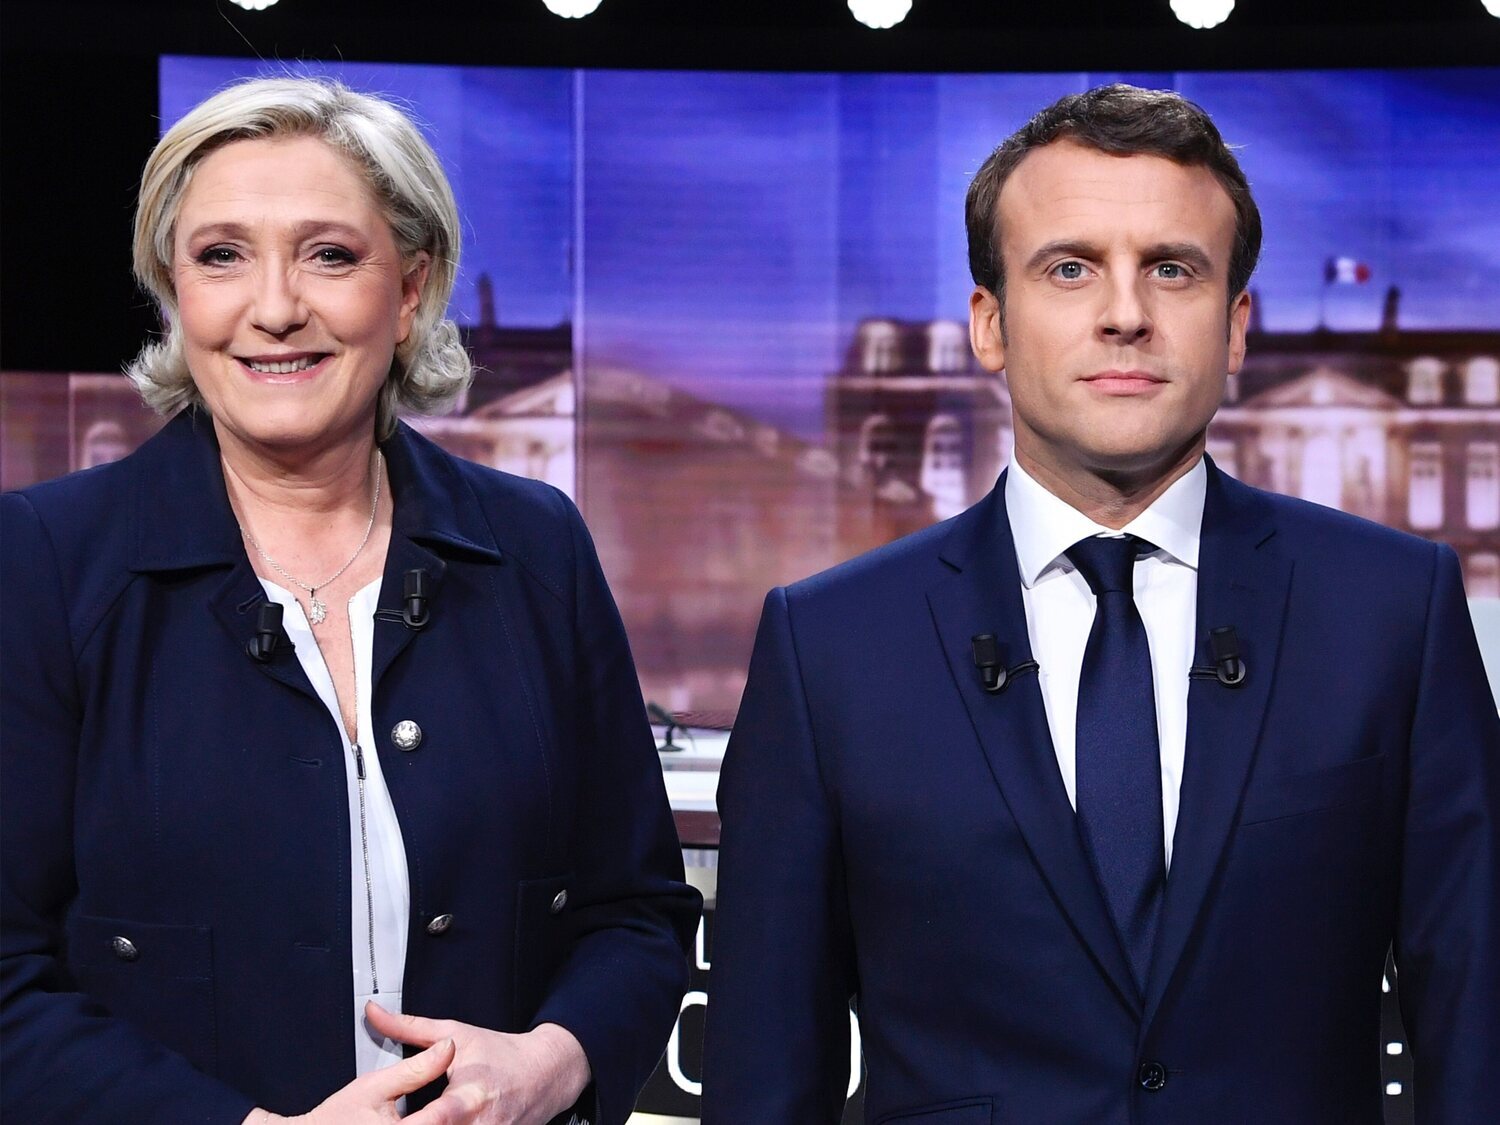 La segunda vuelta entre Macron y Le Pen: claves de dos programas antagónicos